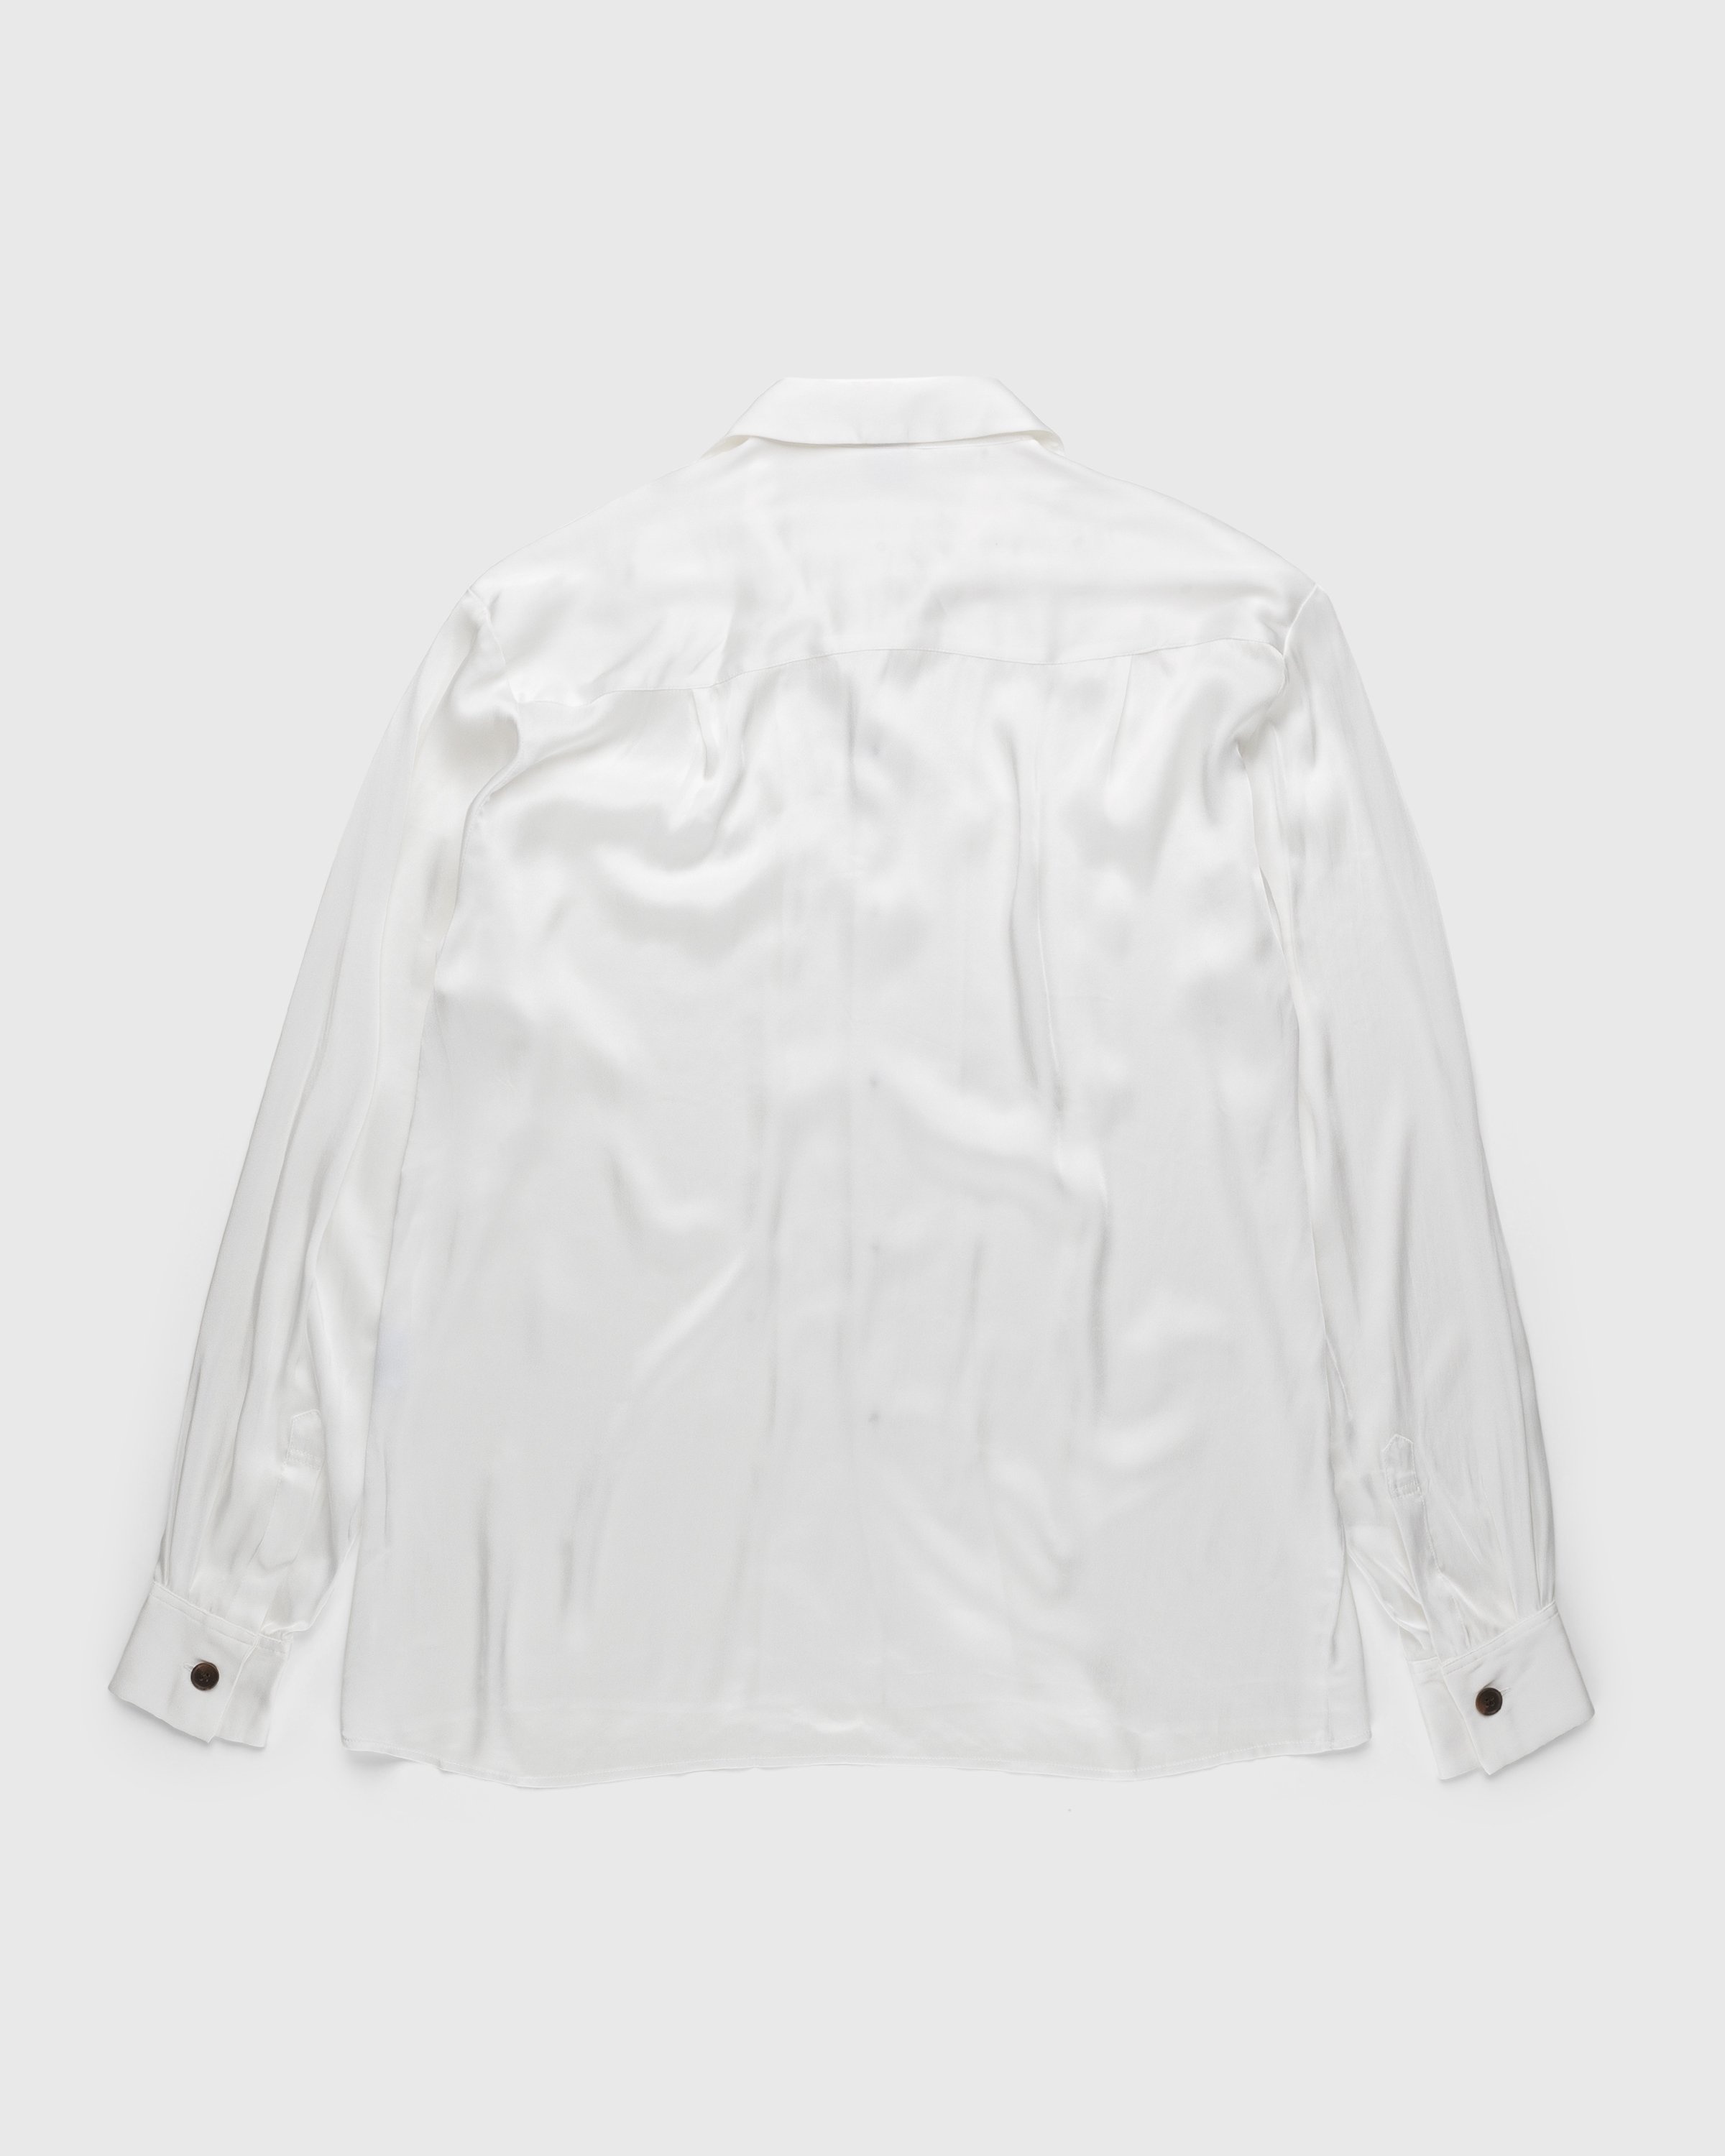 Winnie New York – Silk Pajama Shirt Ivory - Shirts - White - Image 2